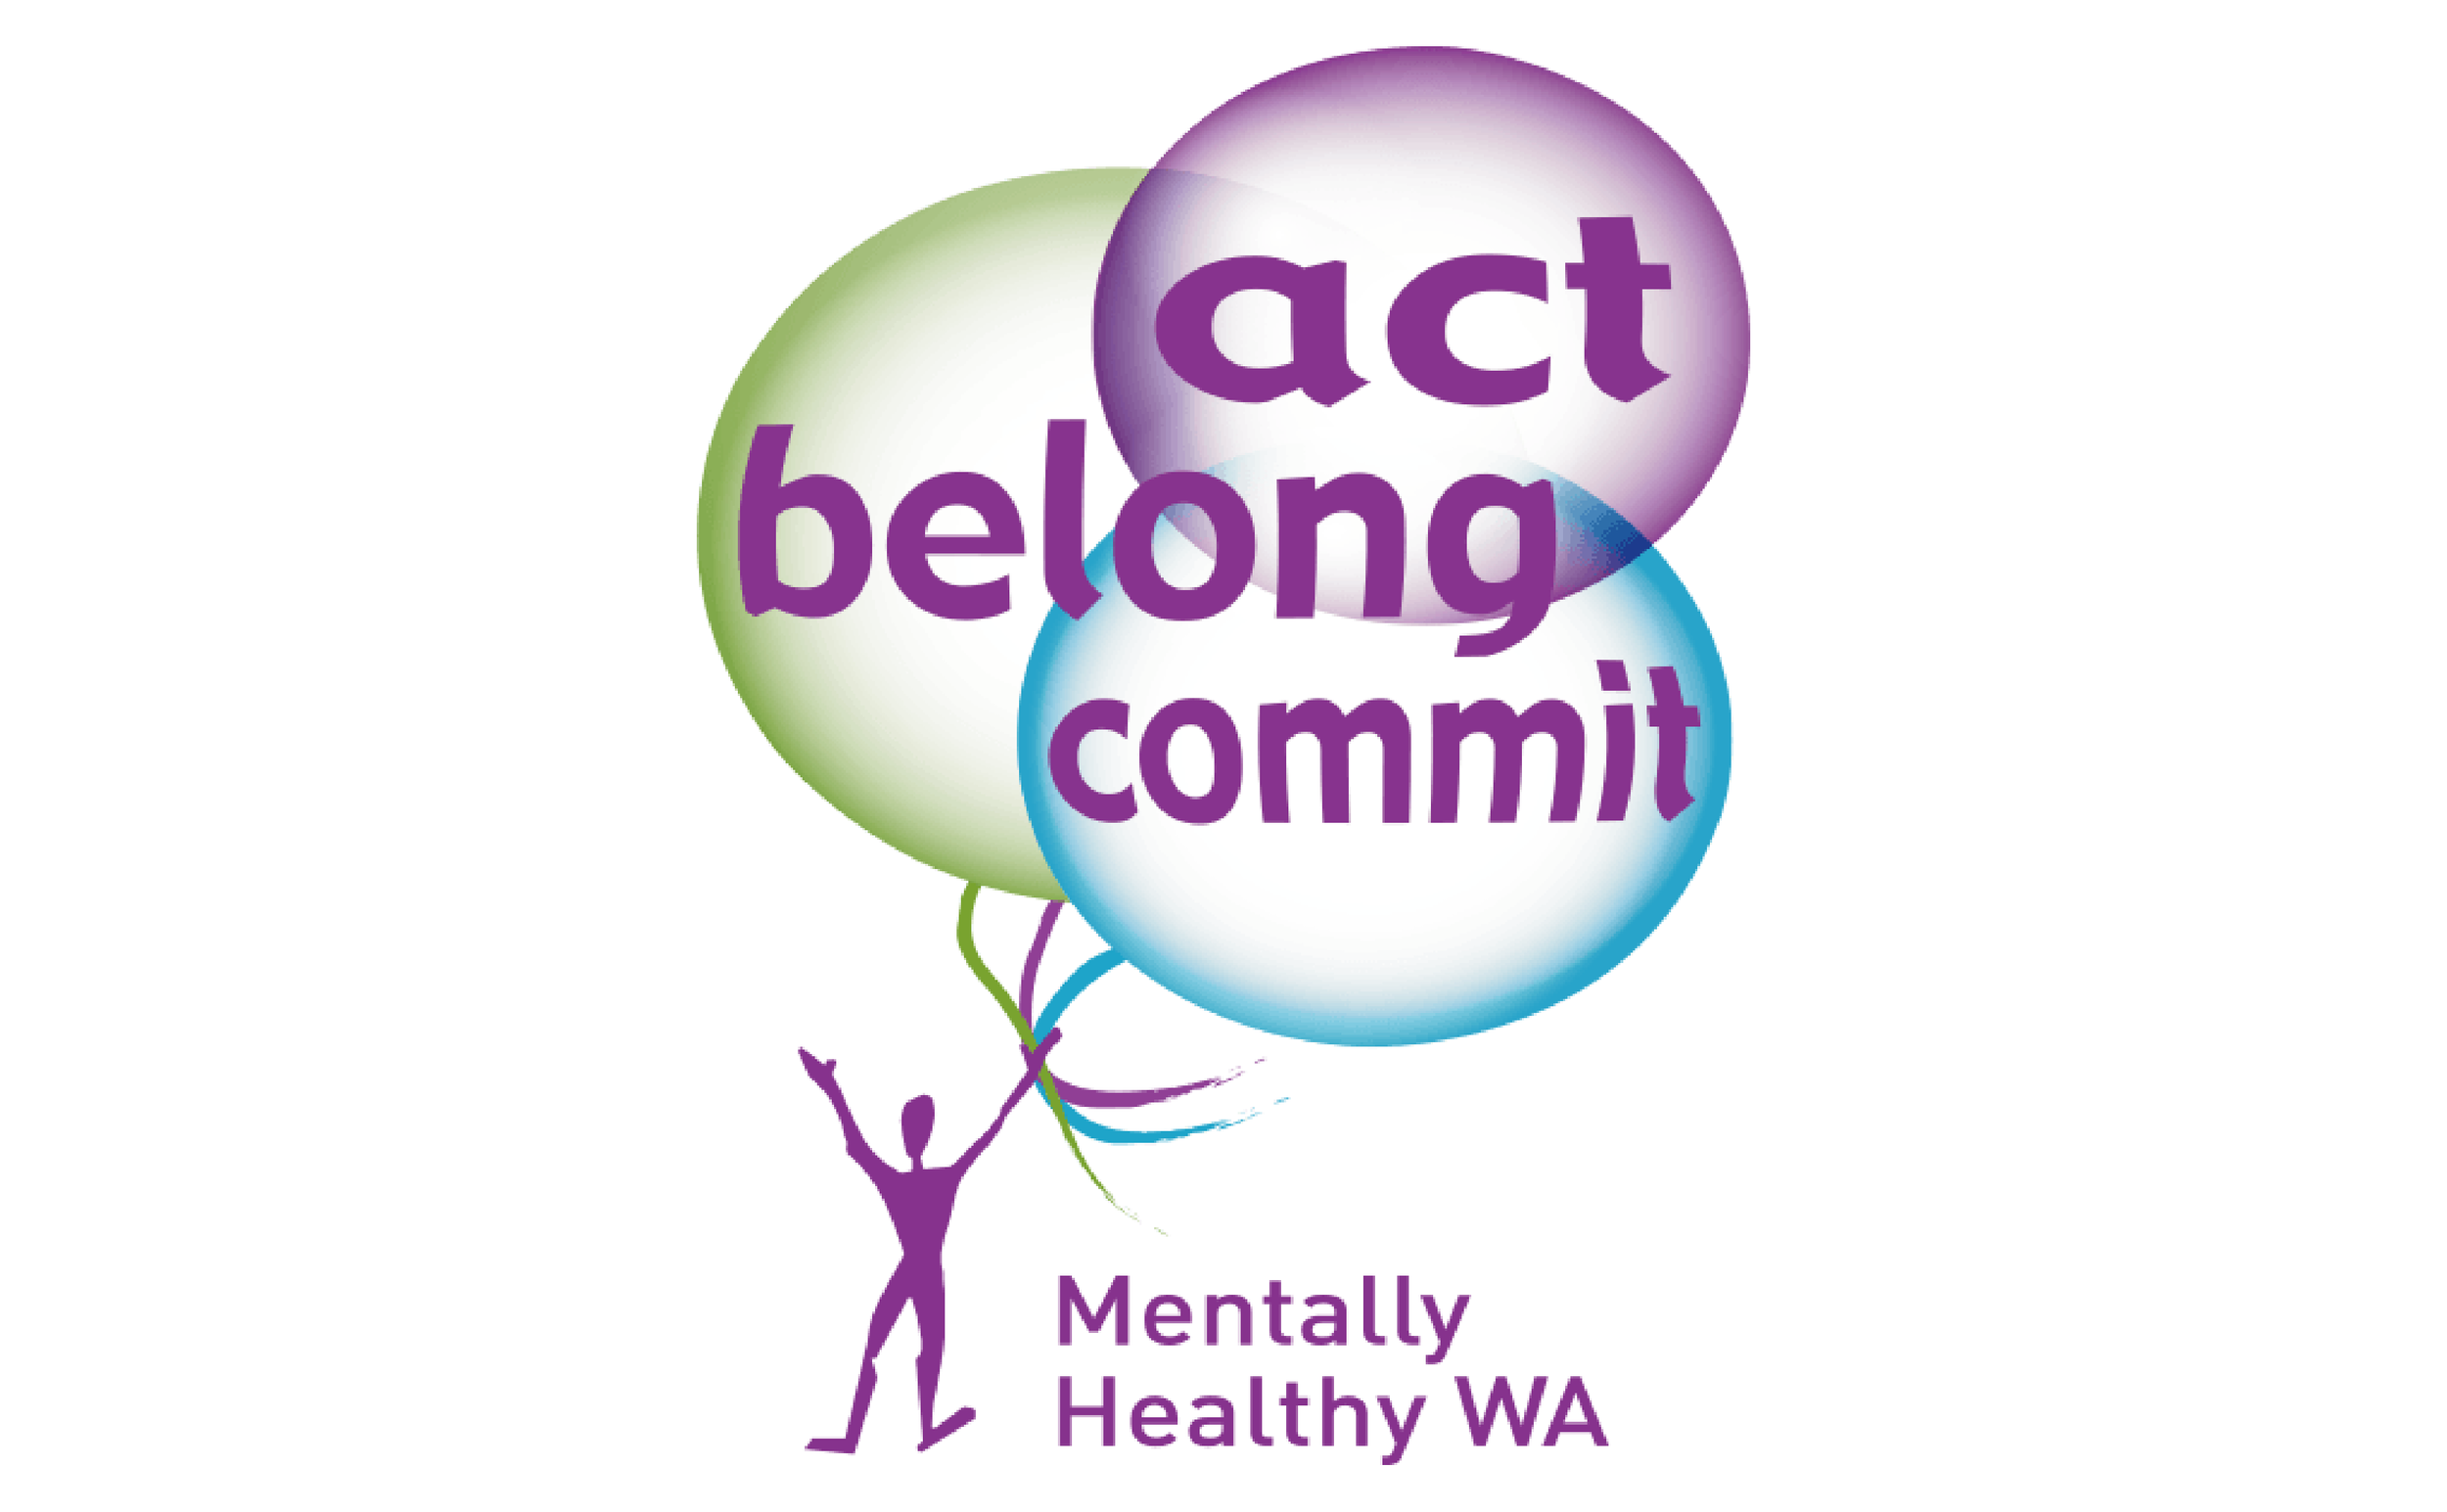 Act Belong Commit